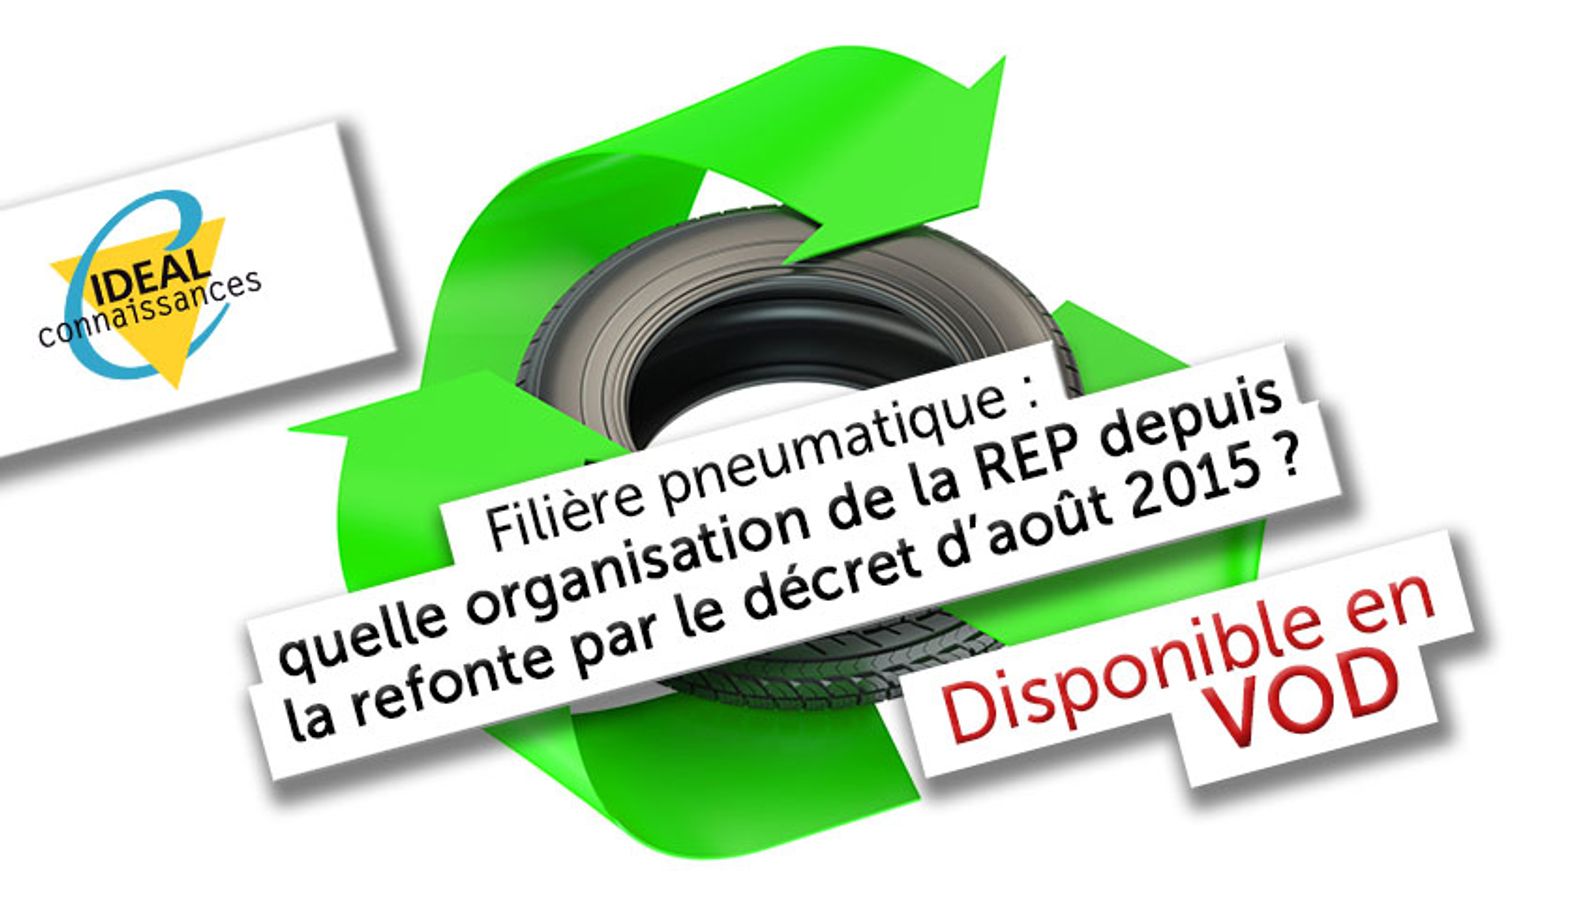 Filière pneumatique : quelle organisation de la REP depuis la refonte par le décret d’août 2015 et quelle coopération territoriale pour gérer ces déchets?